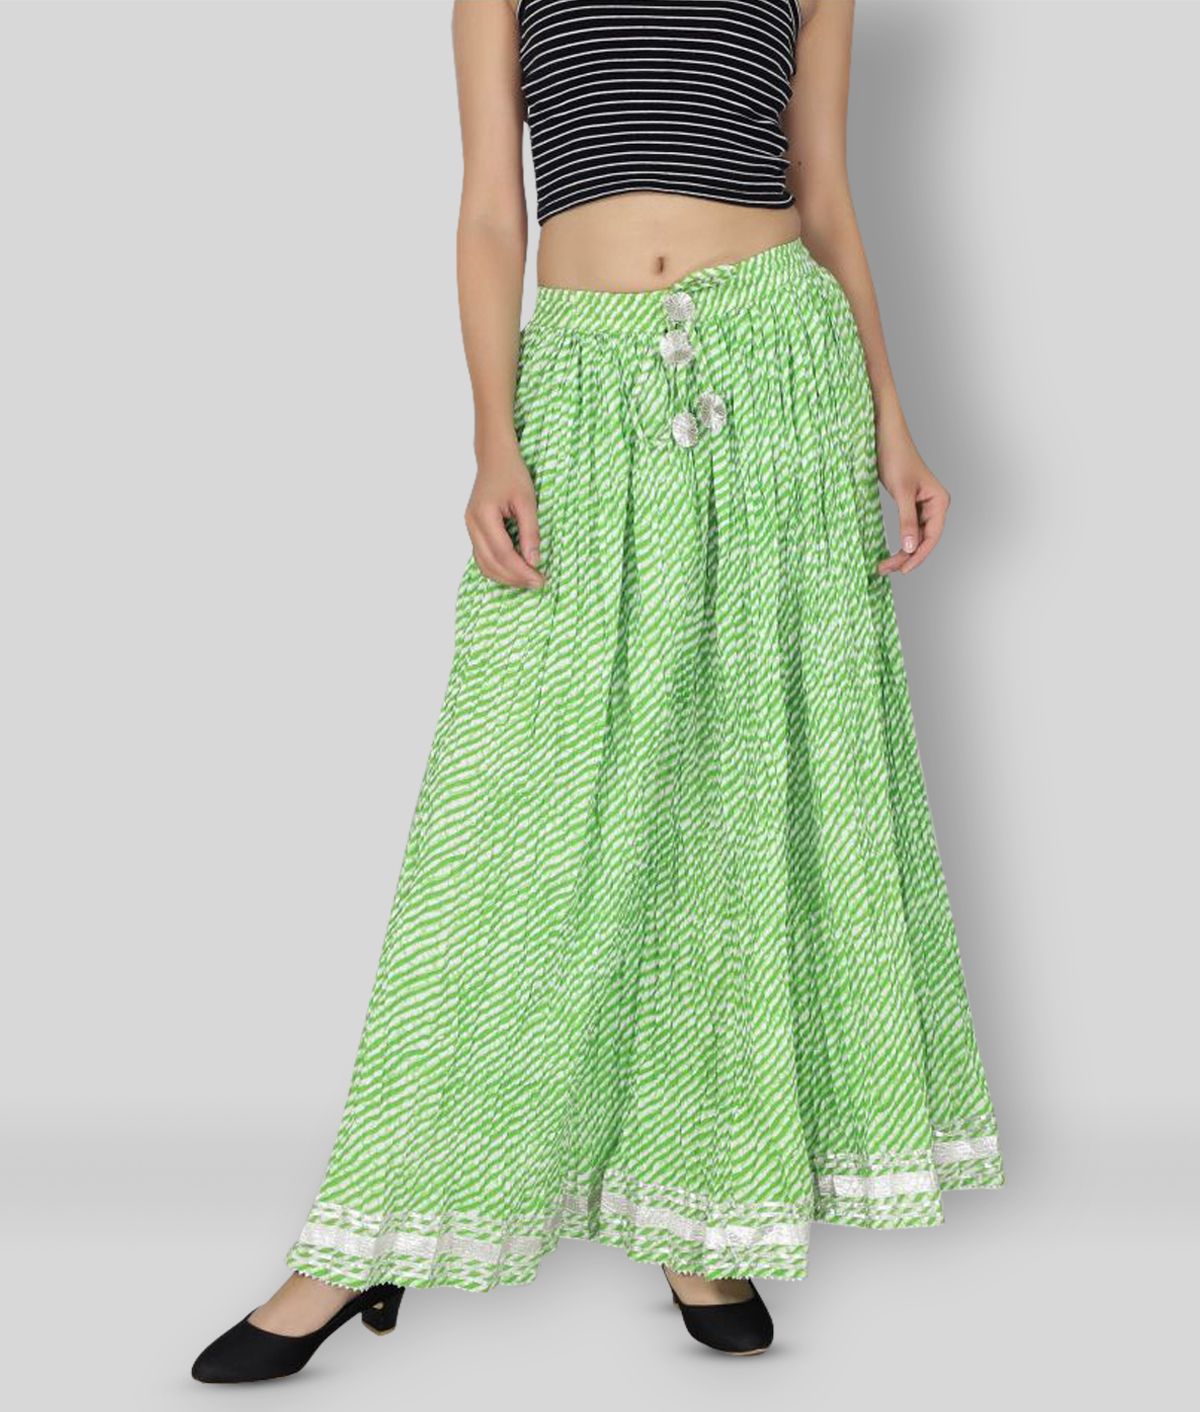     			FABRR - Green Cotton Women's A-Line Skirt ( Pack of 1 )